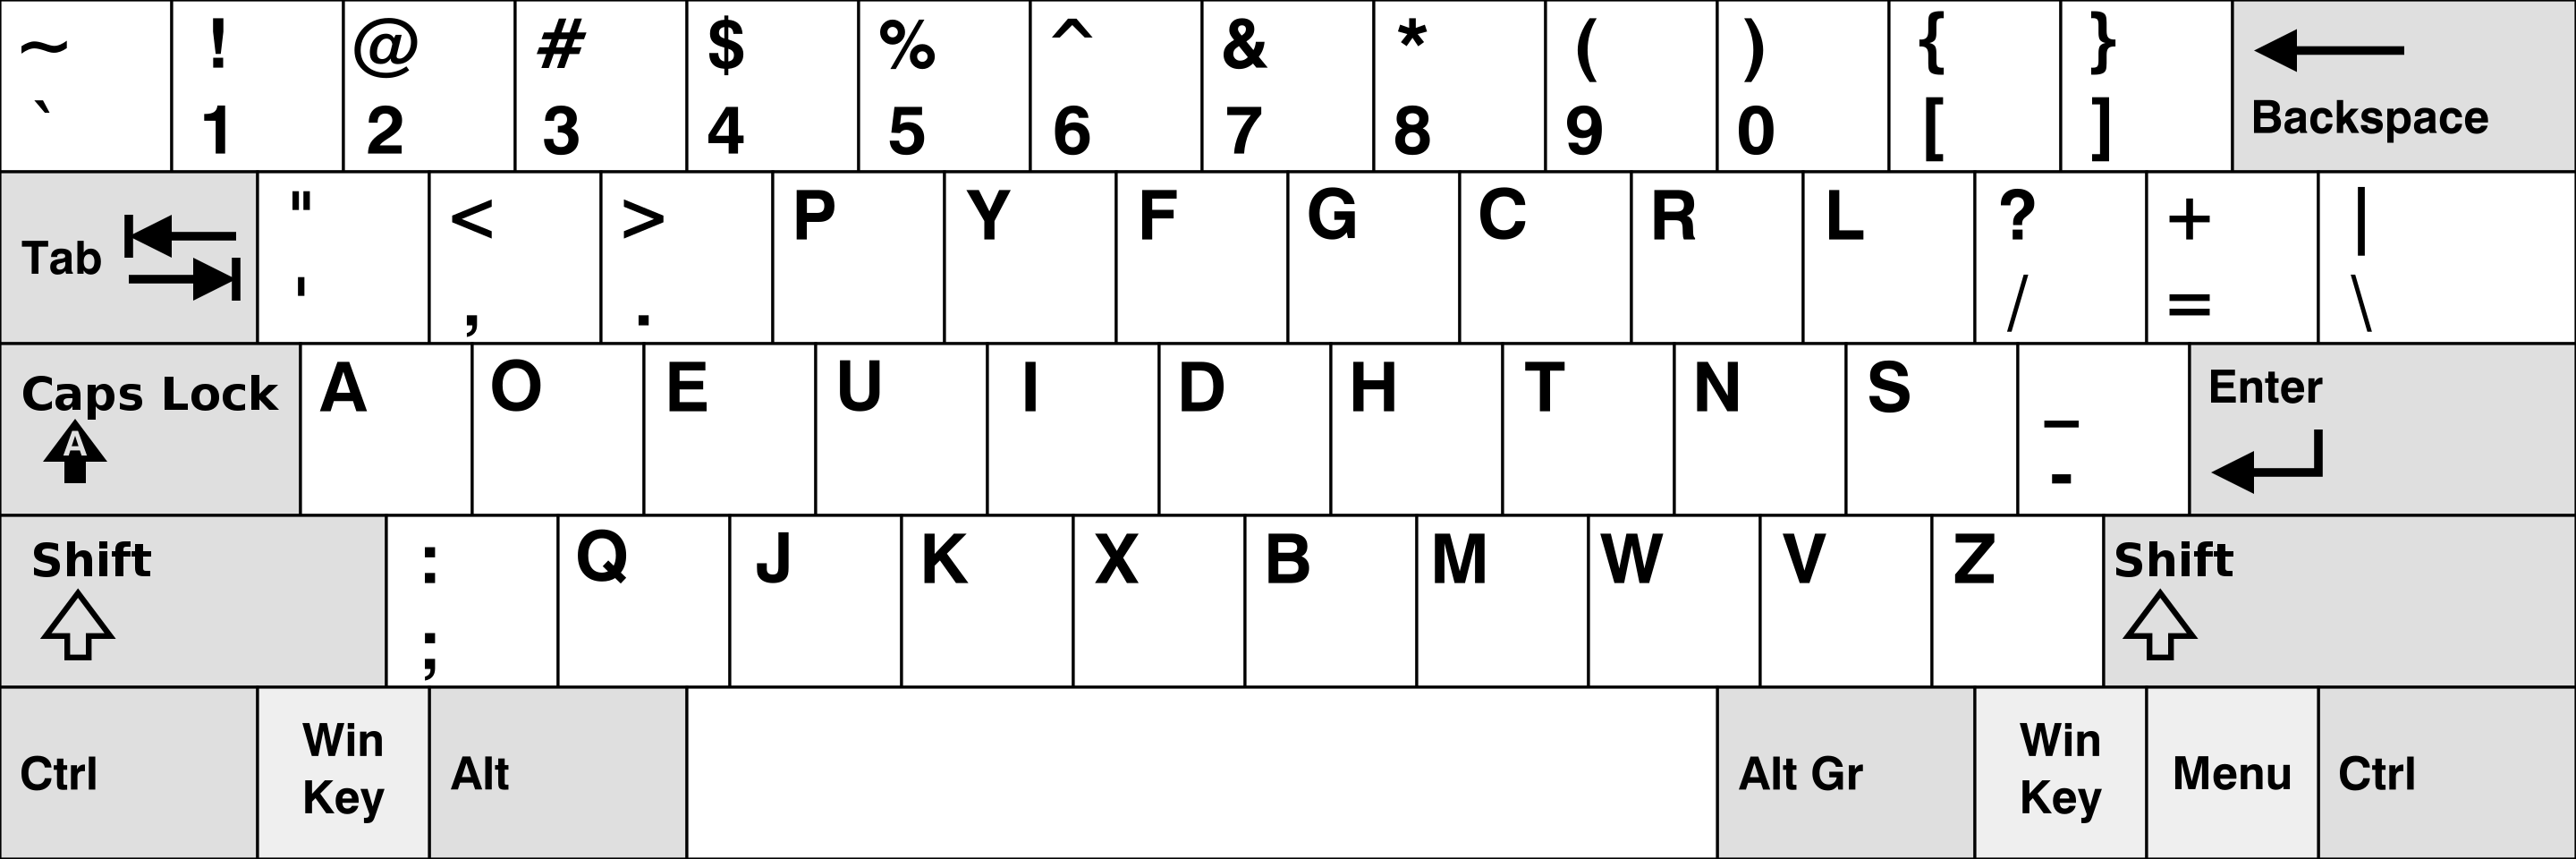 Dvorak 鍵盤於 1936 由 Auguse Dvorak 教授提出，這款鍵盤的支持者認為，它的鍵位分佈相比 QWERTY 鍵盤更符合人體工程學，因此可以提升使用者的打字速度，減少肌肉勞損。